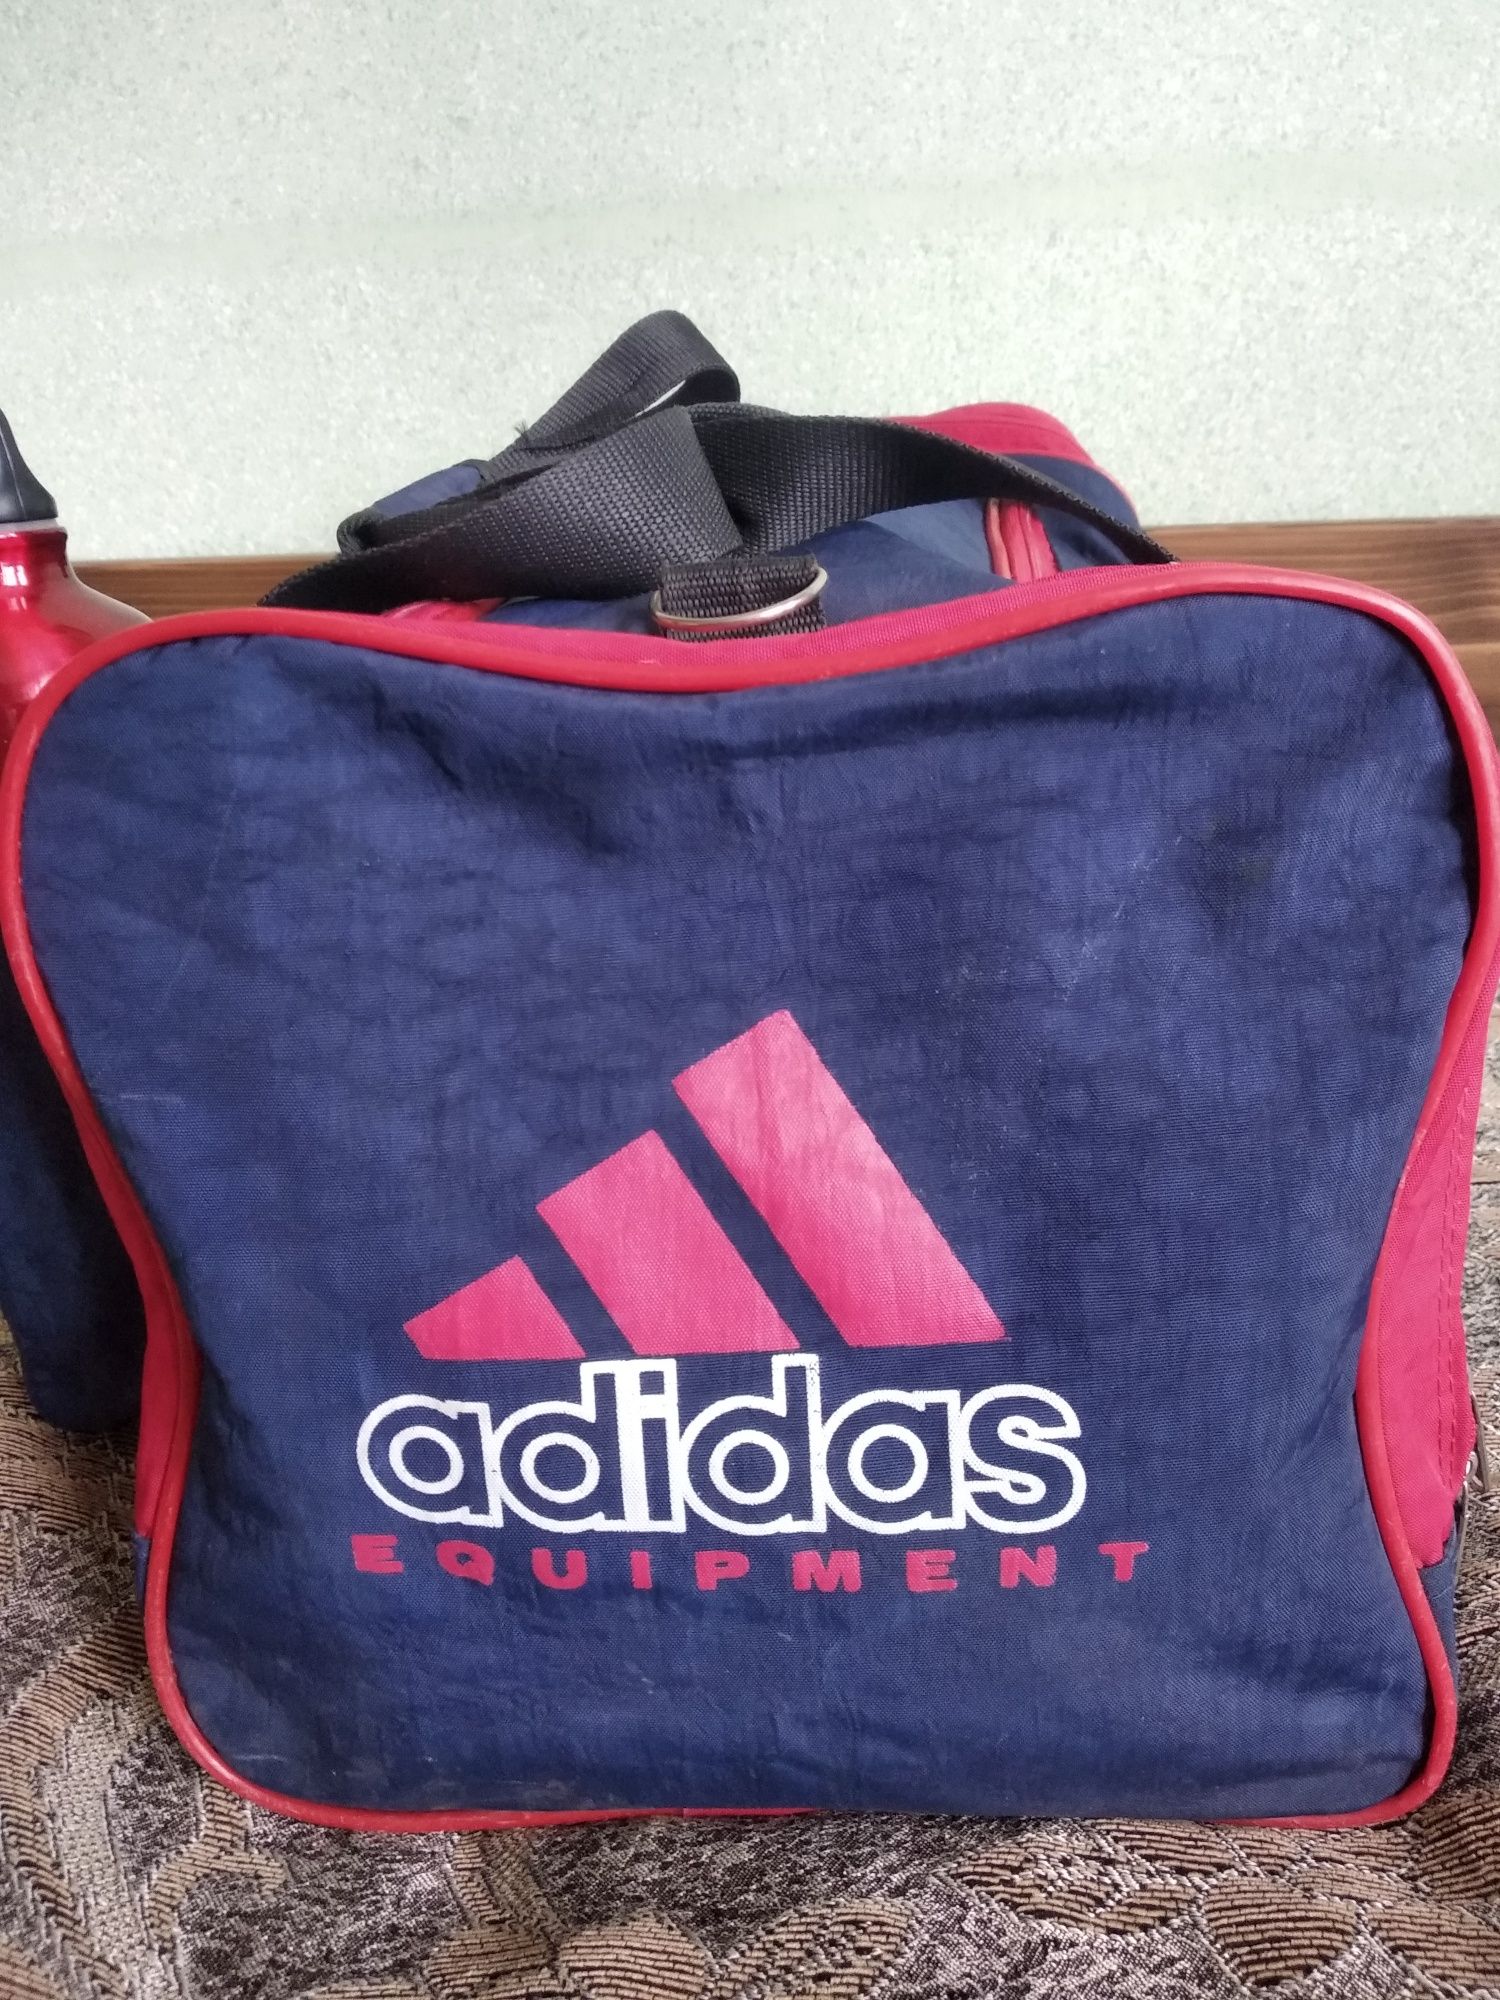 Дорожная сумка Adidas. Спортивная сумка Telenor